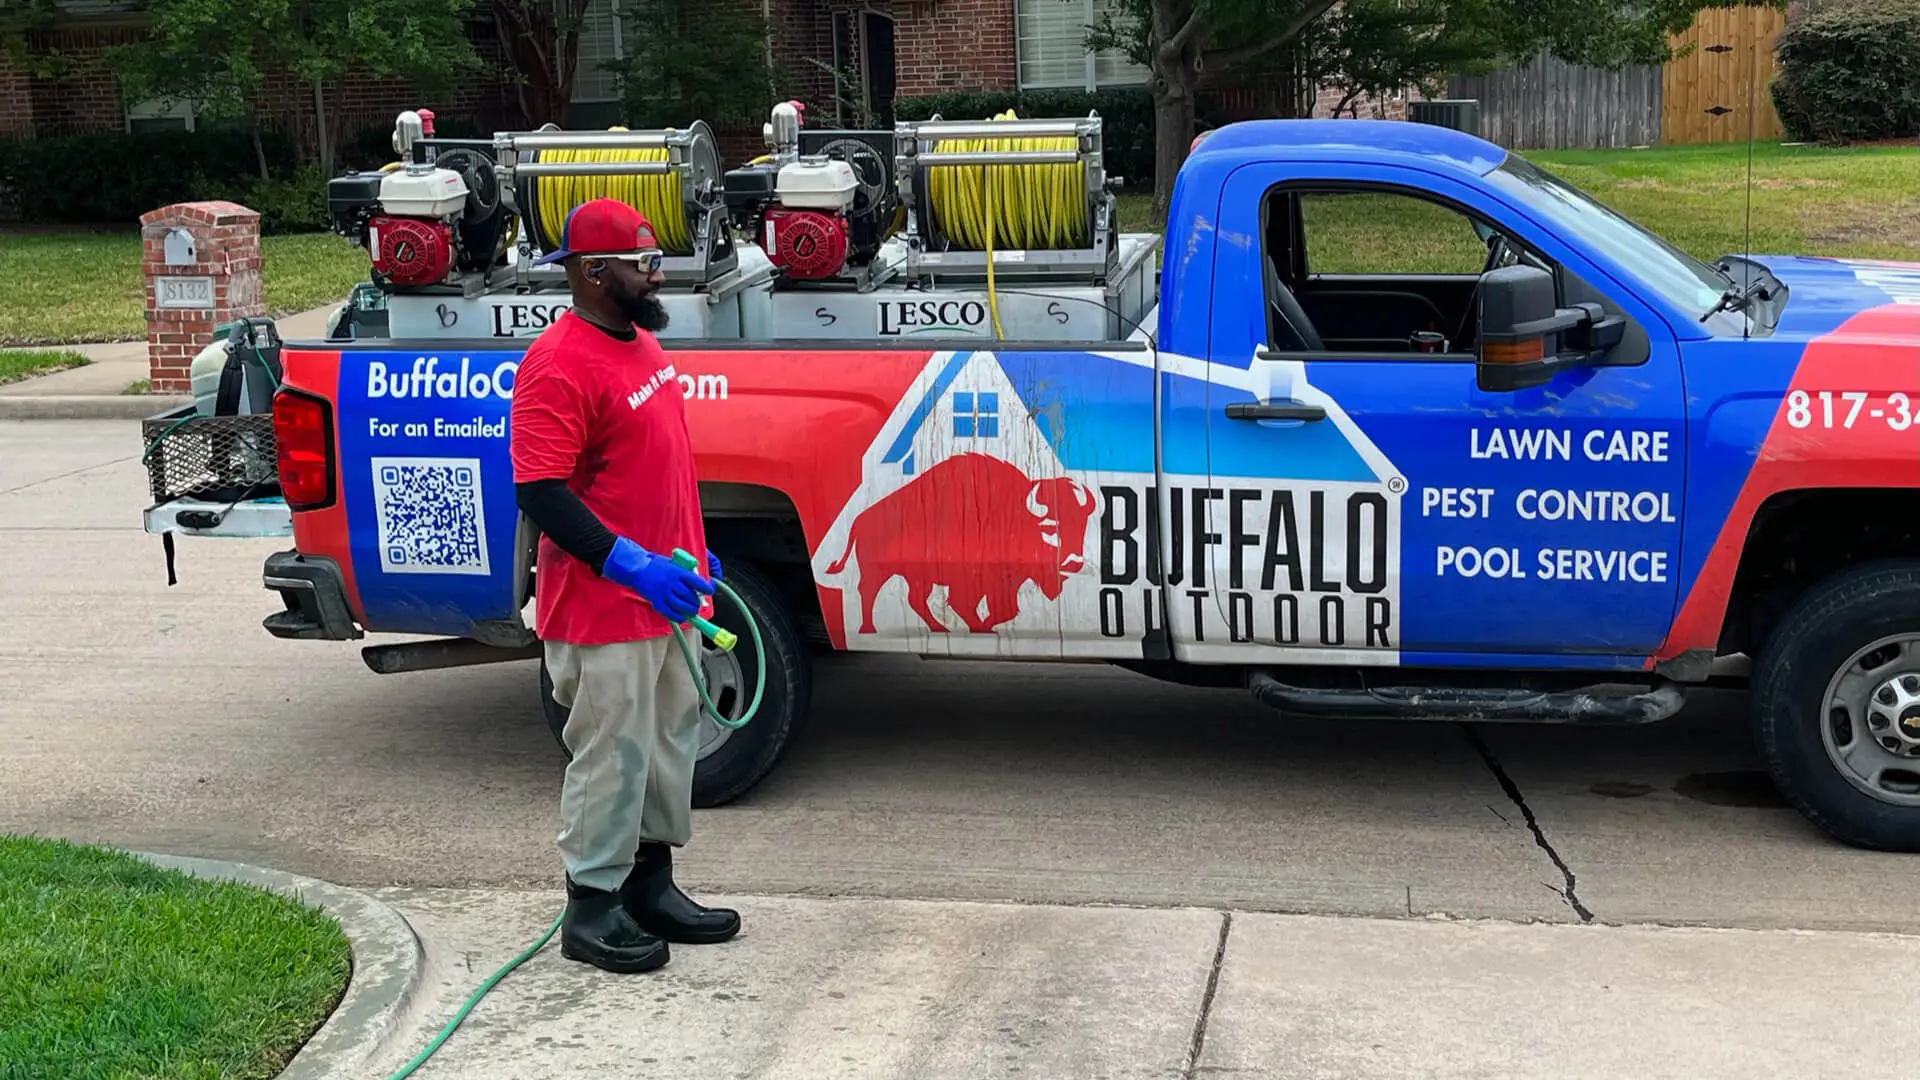 Buffalo Outdoor work truck in Keller, TX.